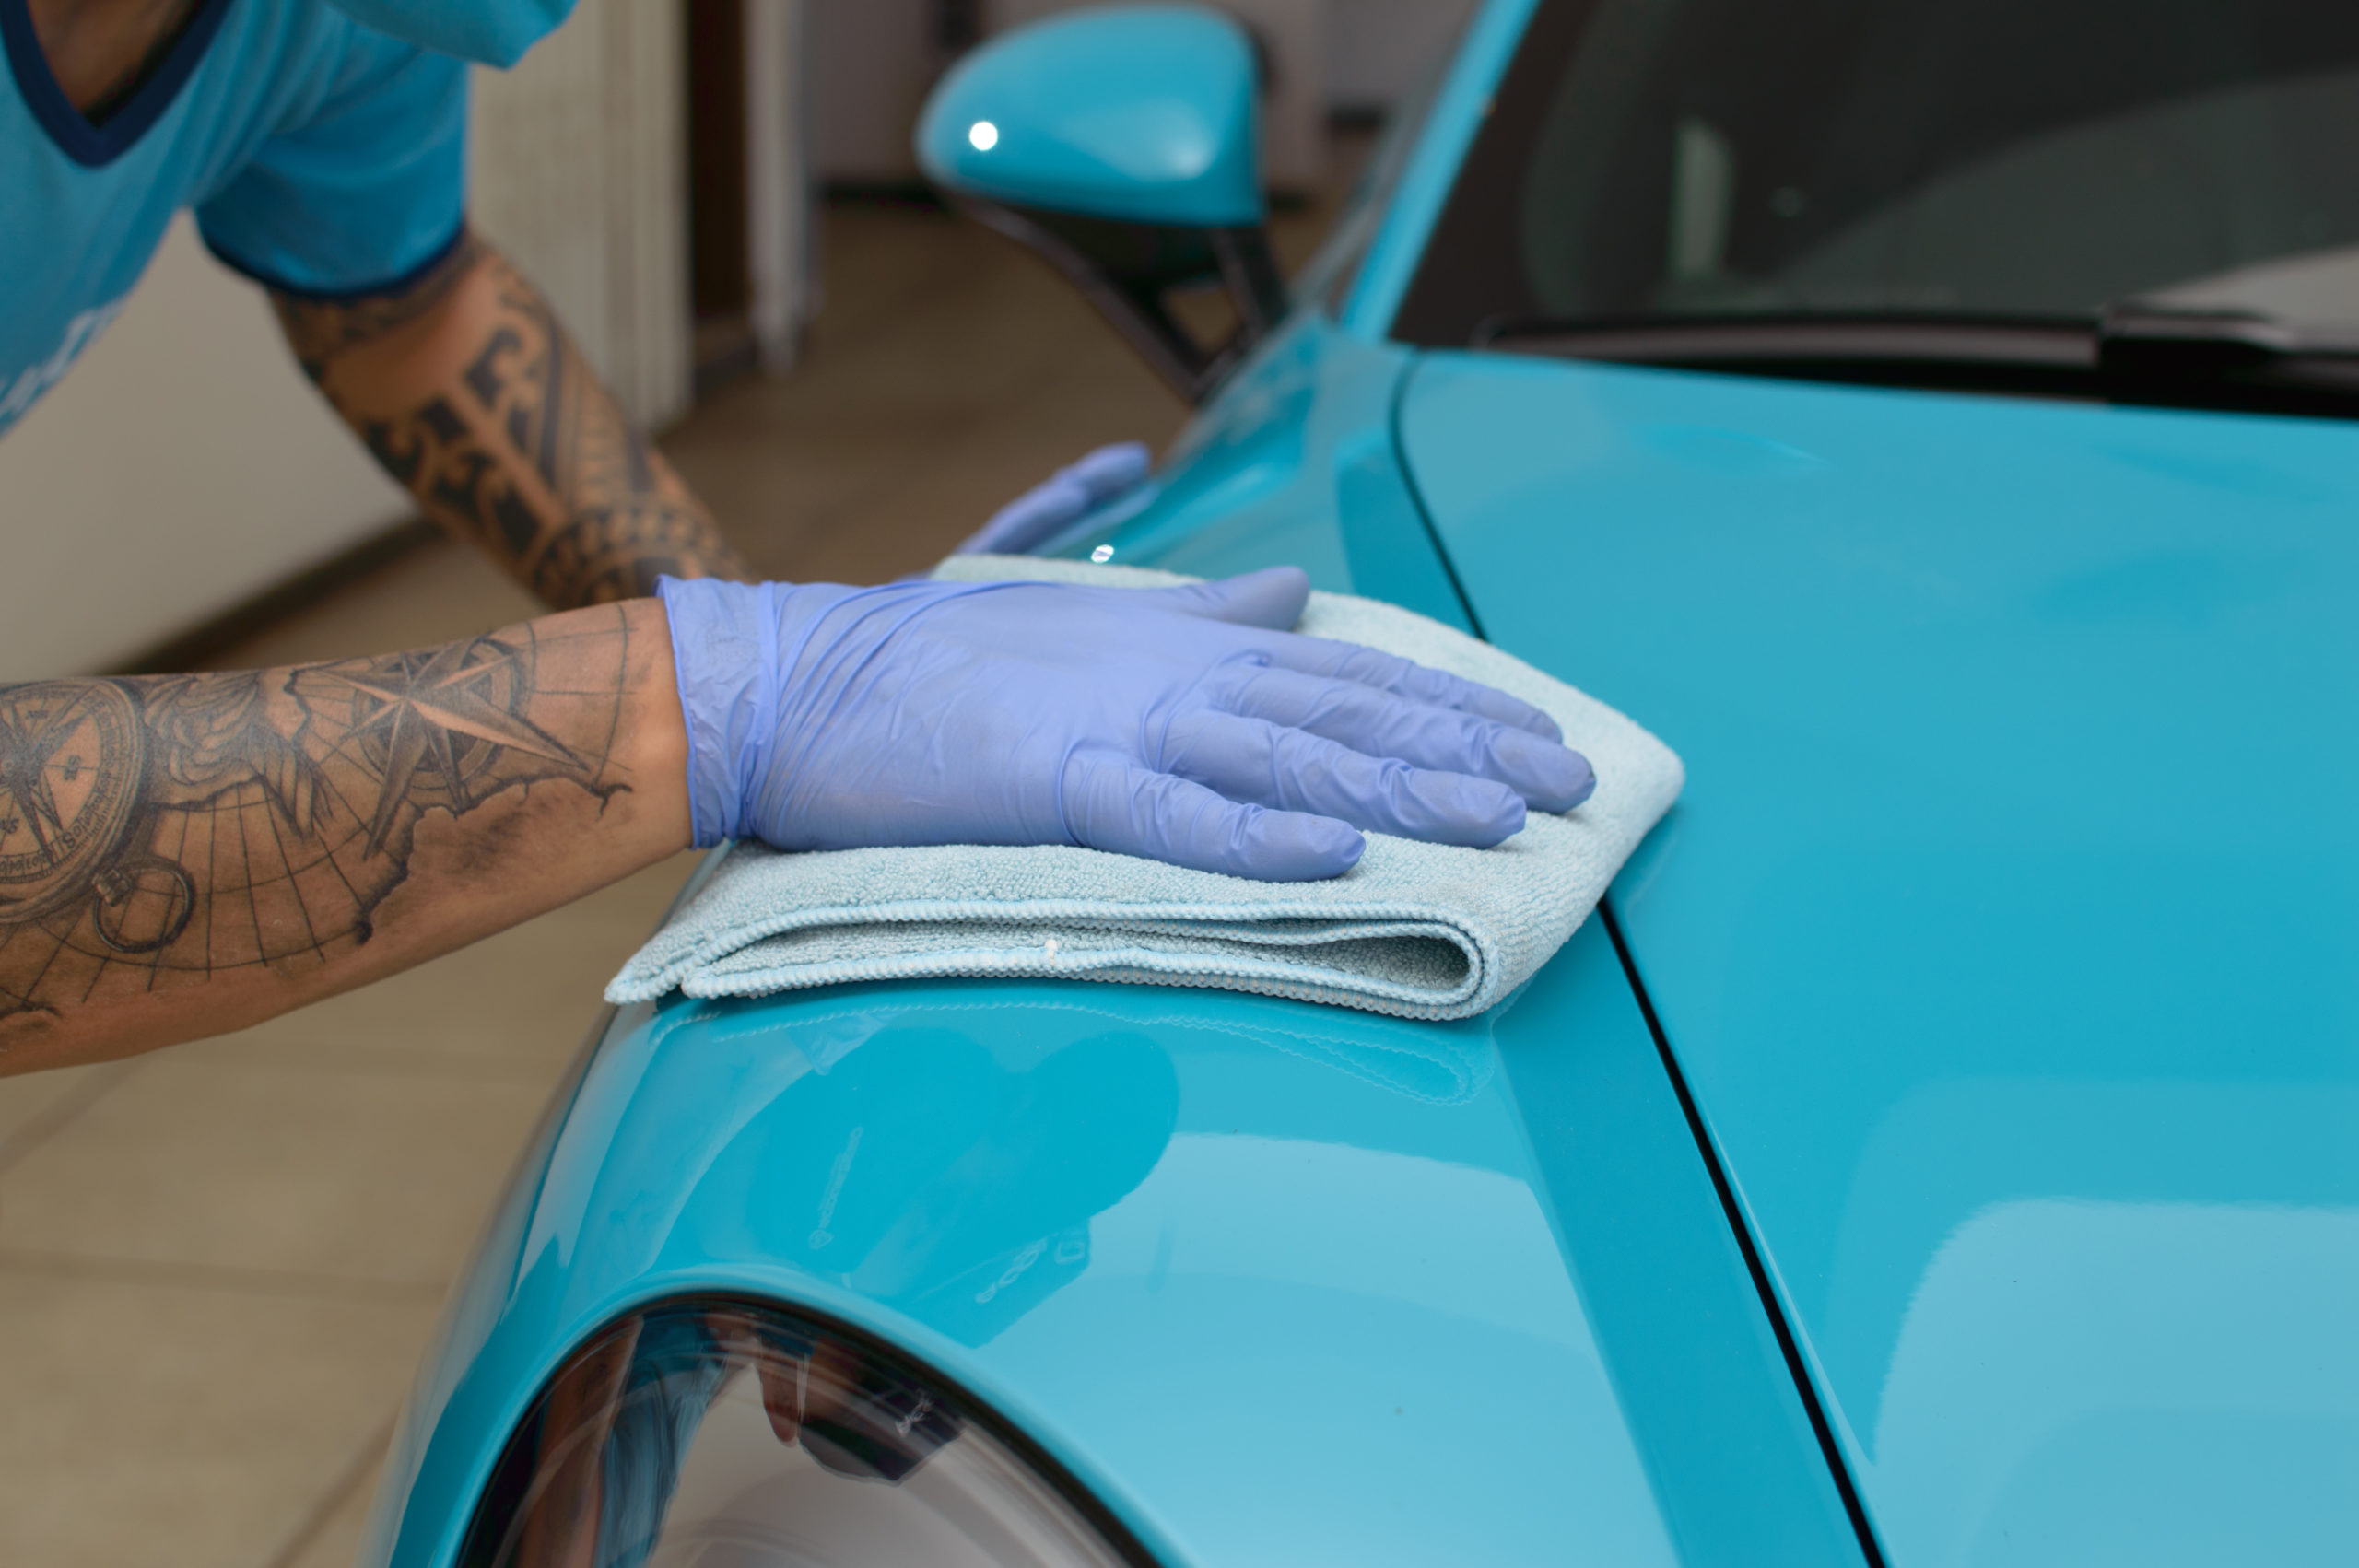 Imagem de uma pessoa passando um pano azul na lataria de um carro também azul (imagem ilustrativa).